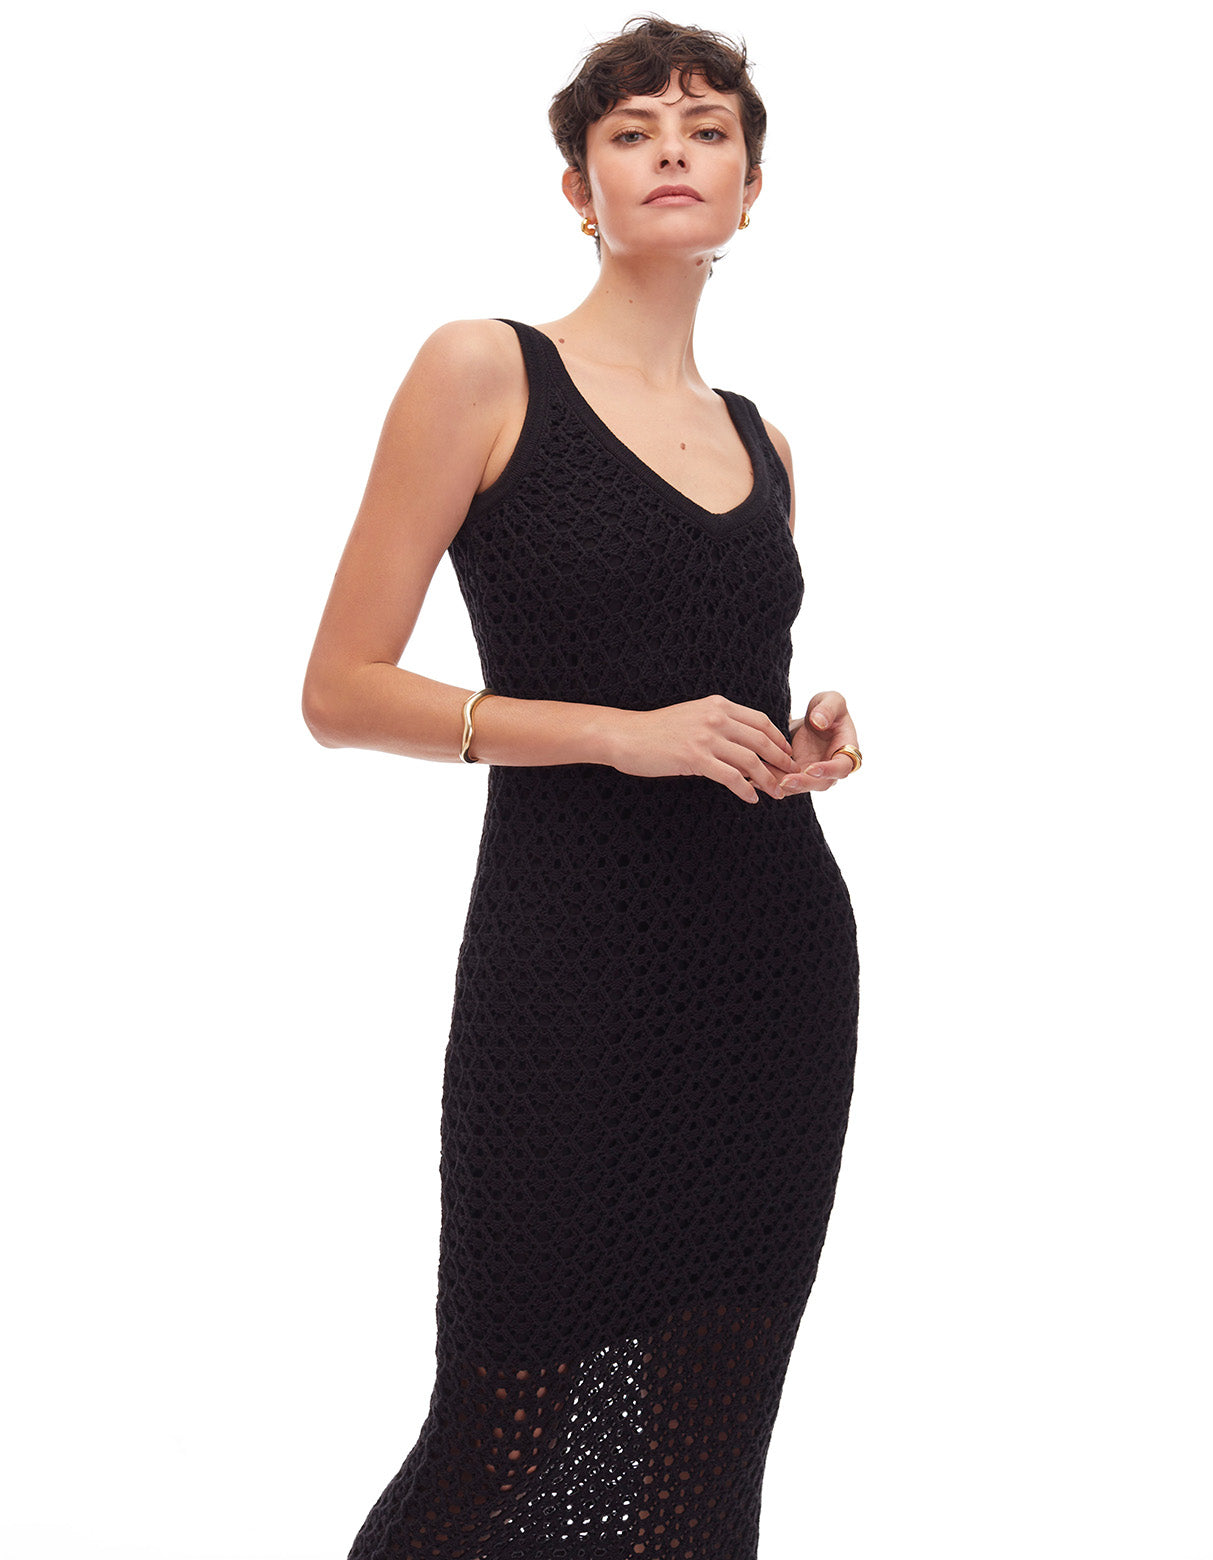 maddie crochet v neck tank midi dress jet black - figure flattering resortwear summer dresses for women